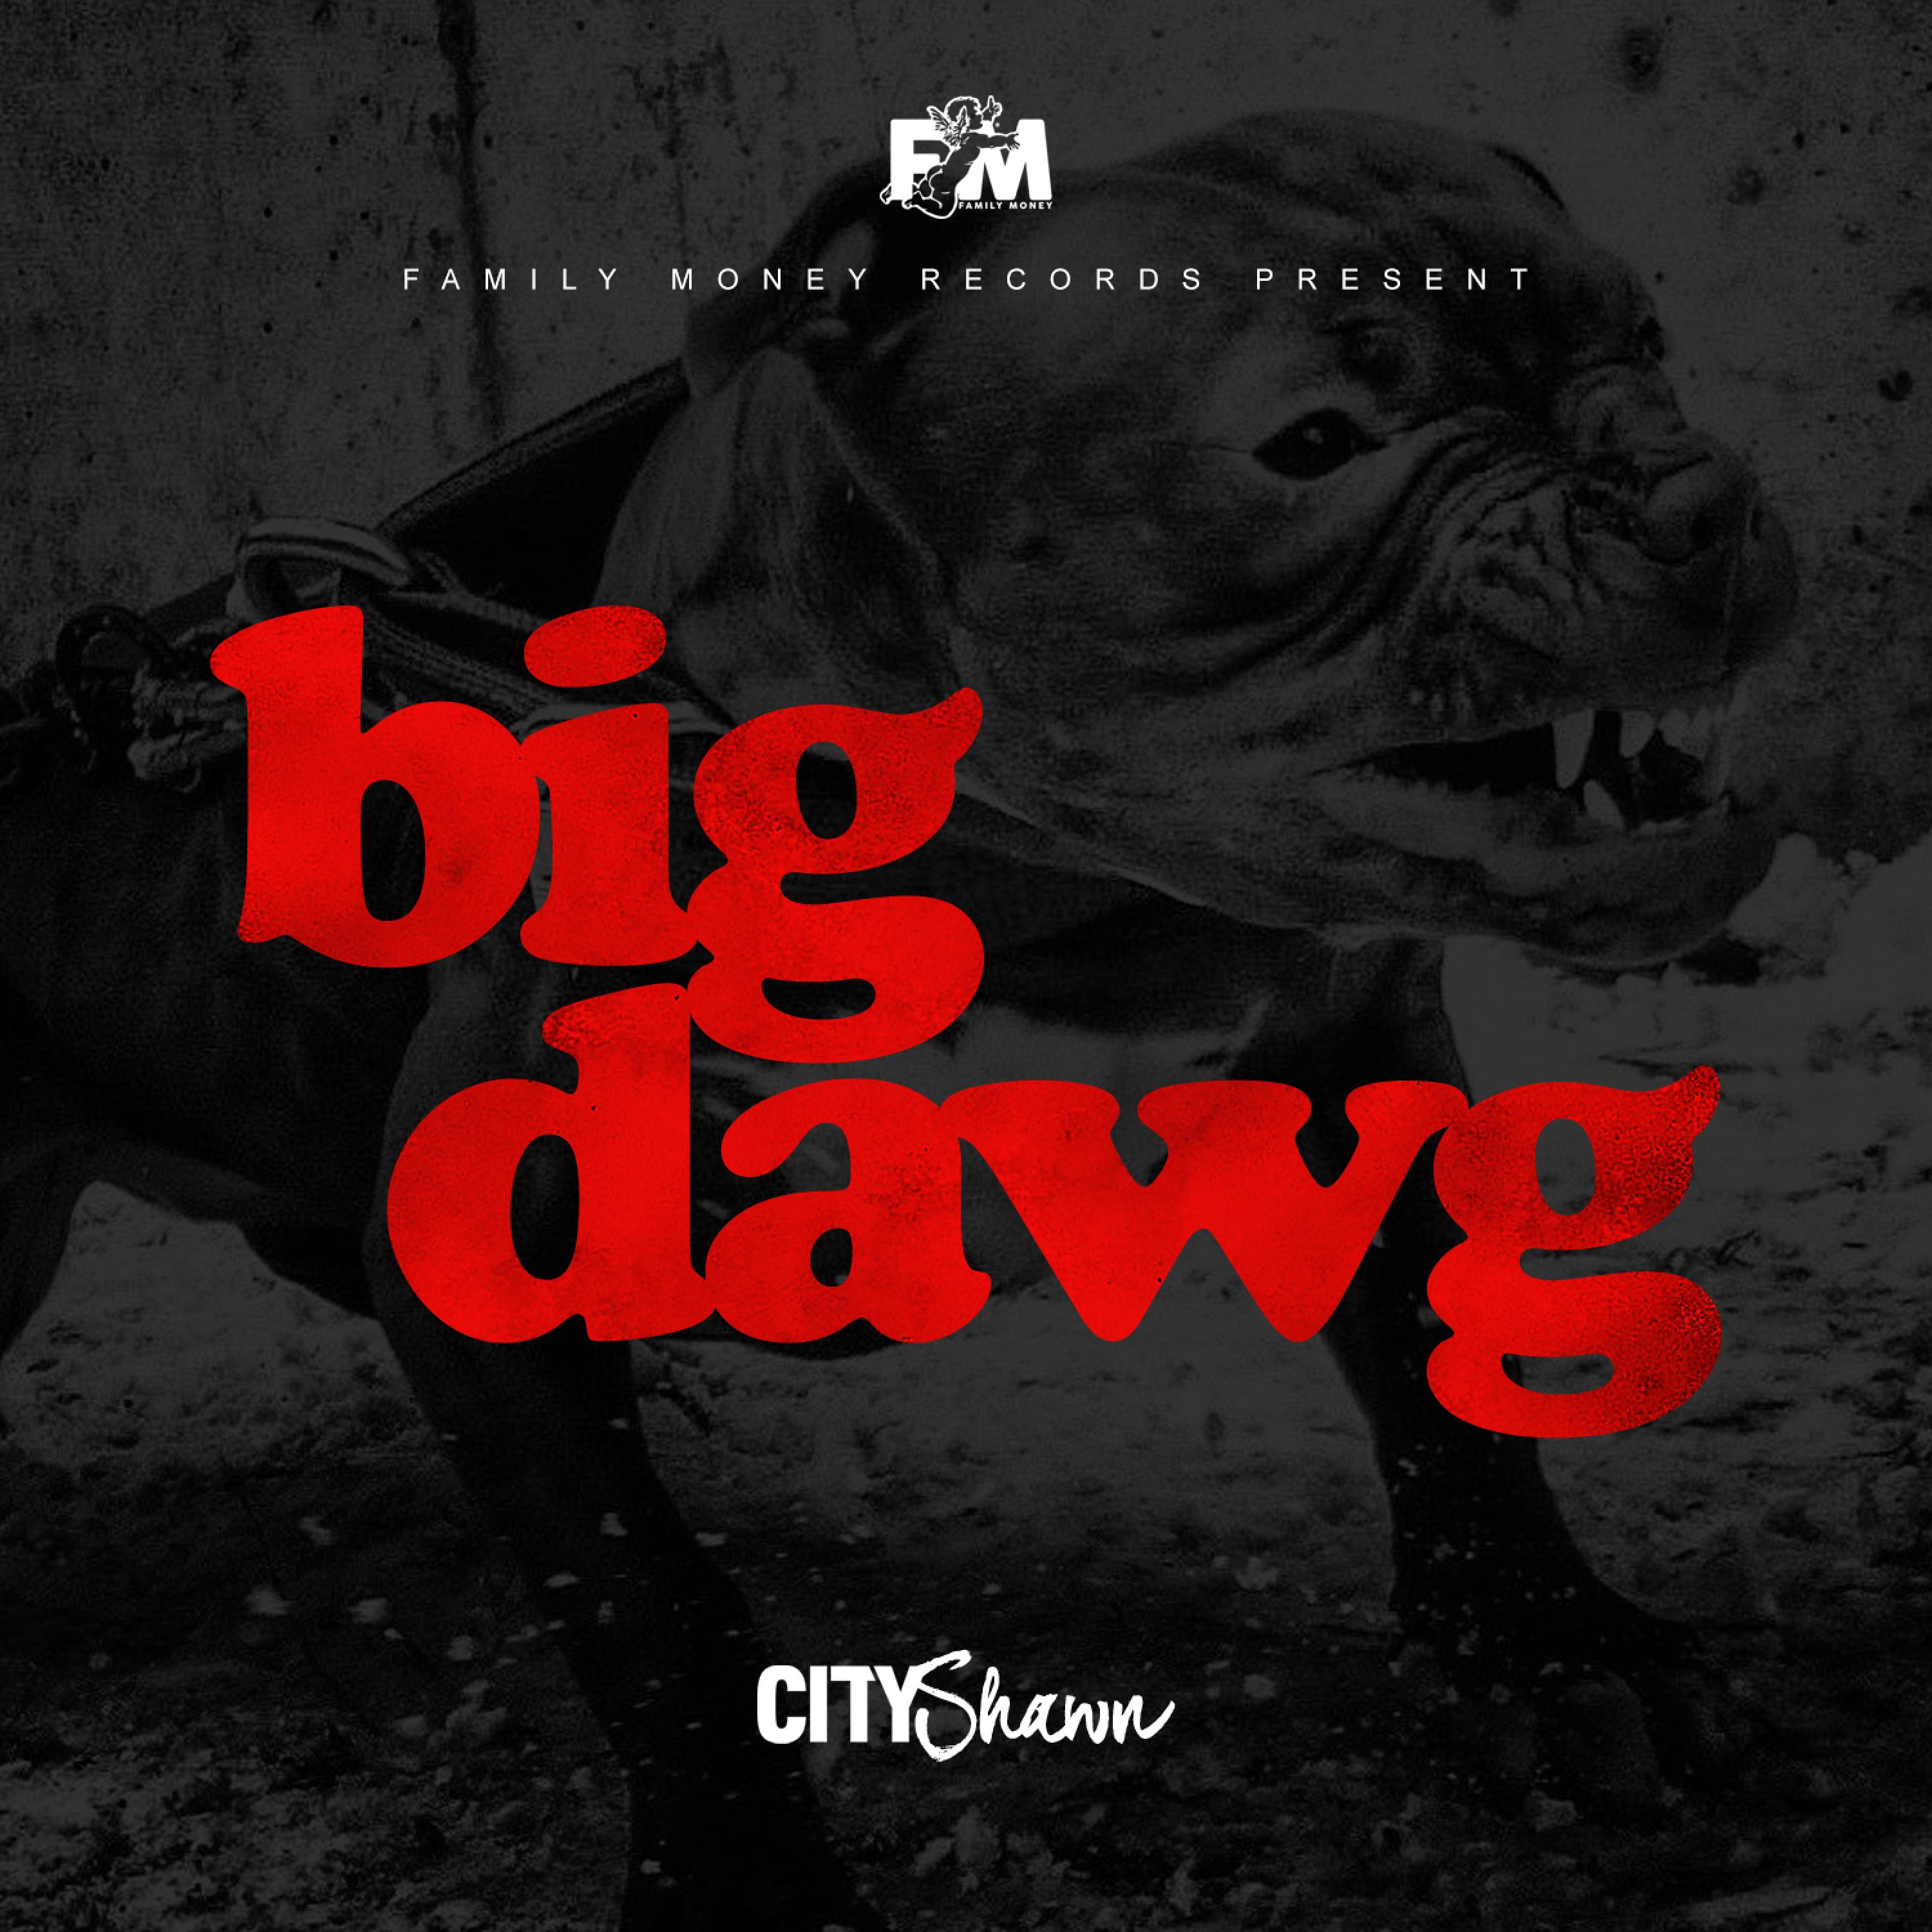 Big Dawg